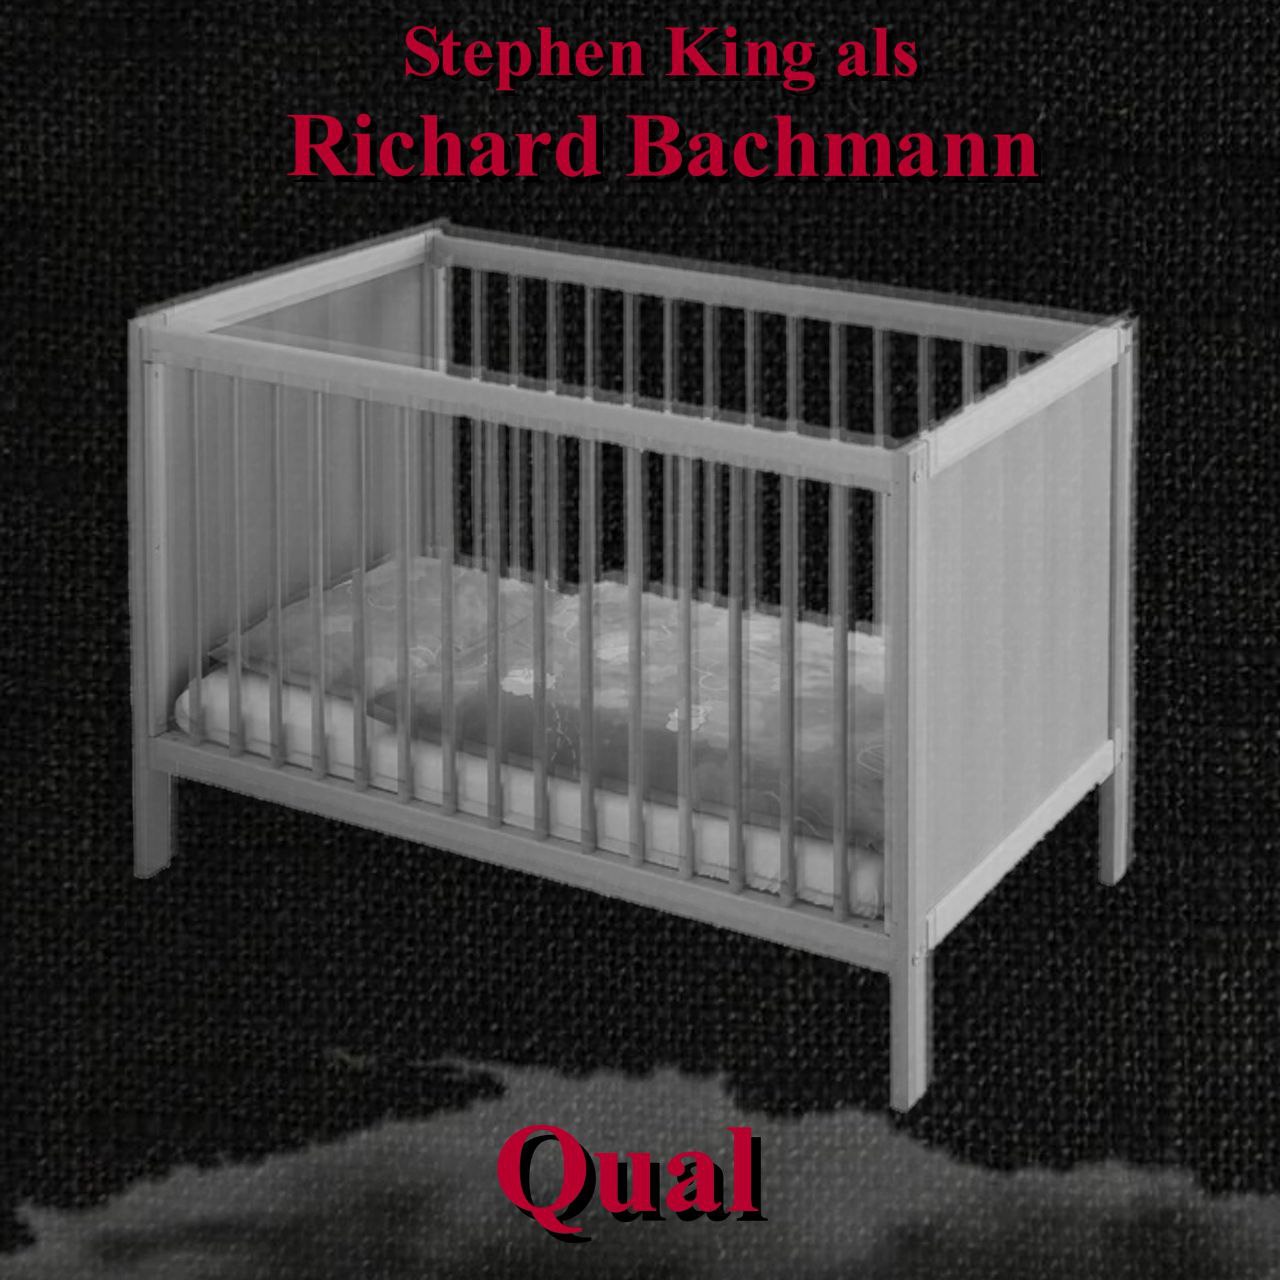 Cover: ein in Grautönen gehaltenes Bild mit nur einem leeren Kinderbettchen und dem Schriftzug "Qual"